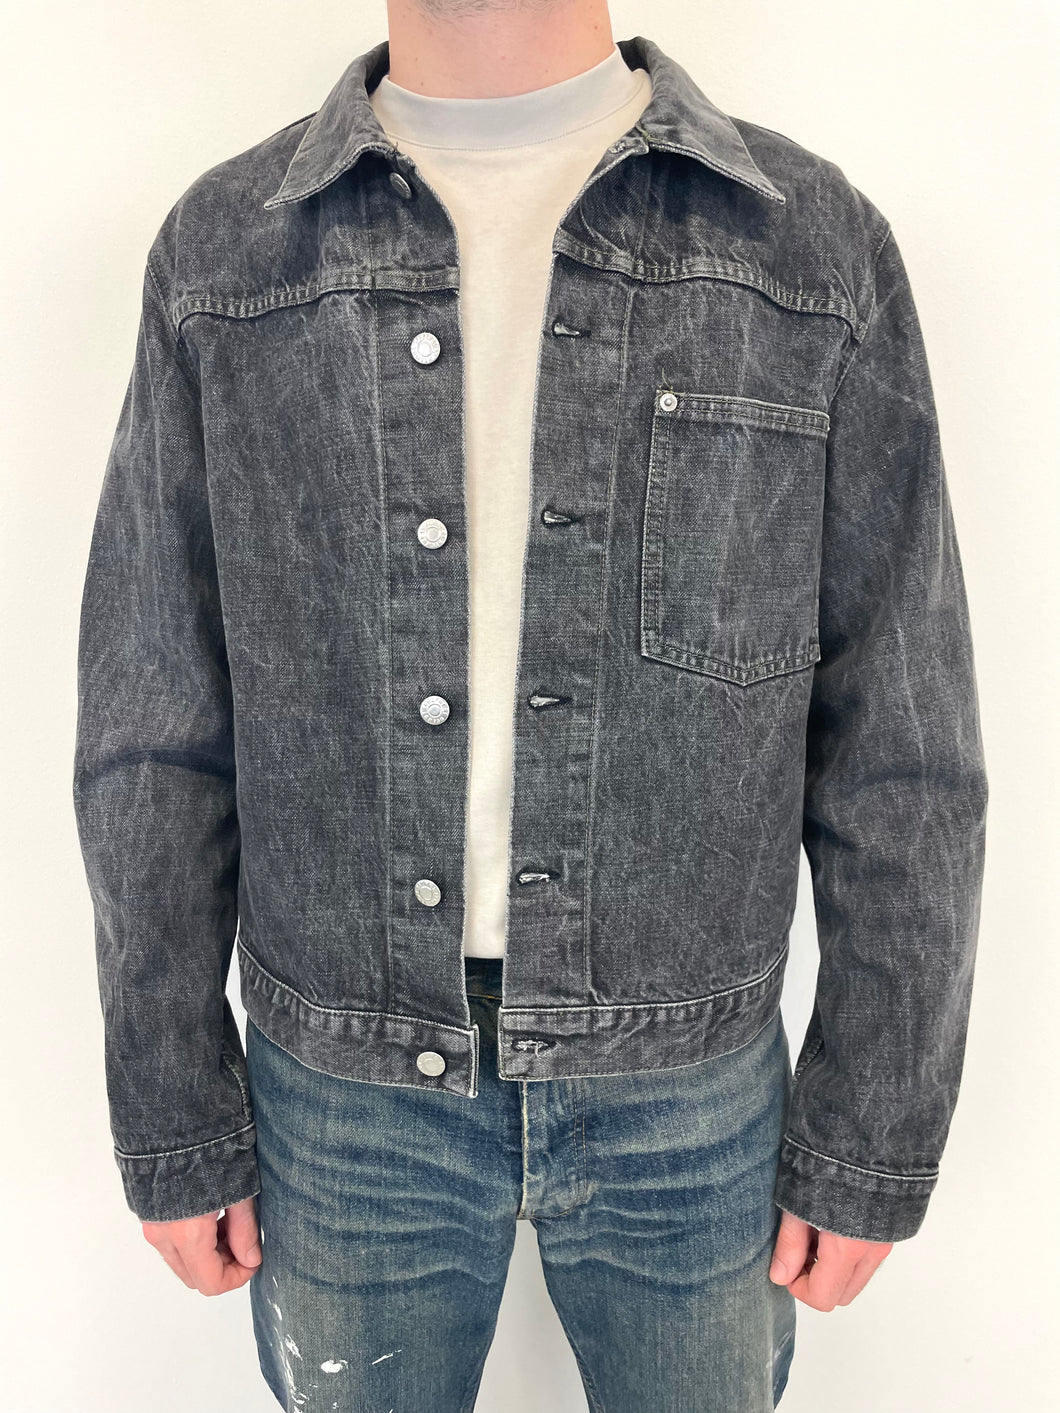 2000s Helmut Lang 1 pocket vintage denim jacket